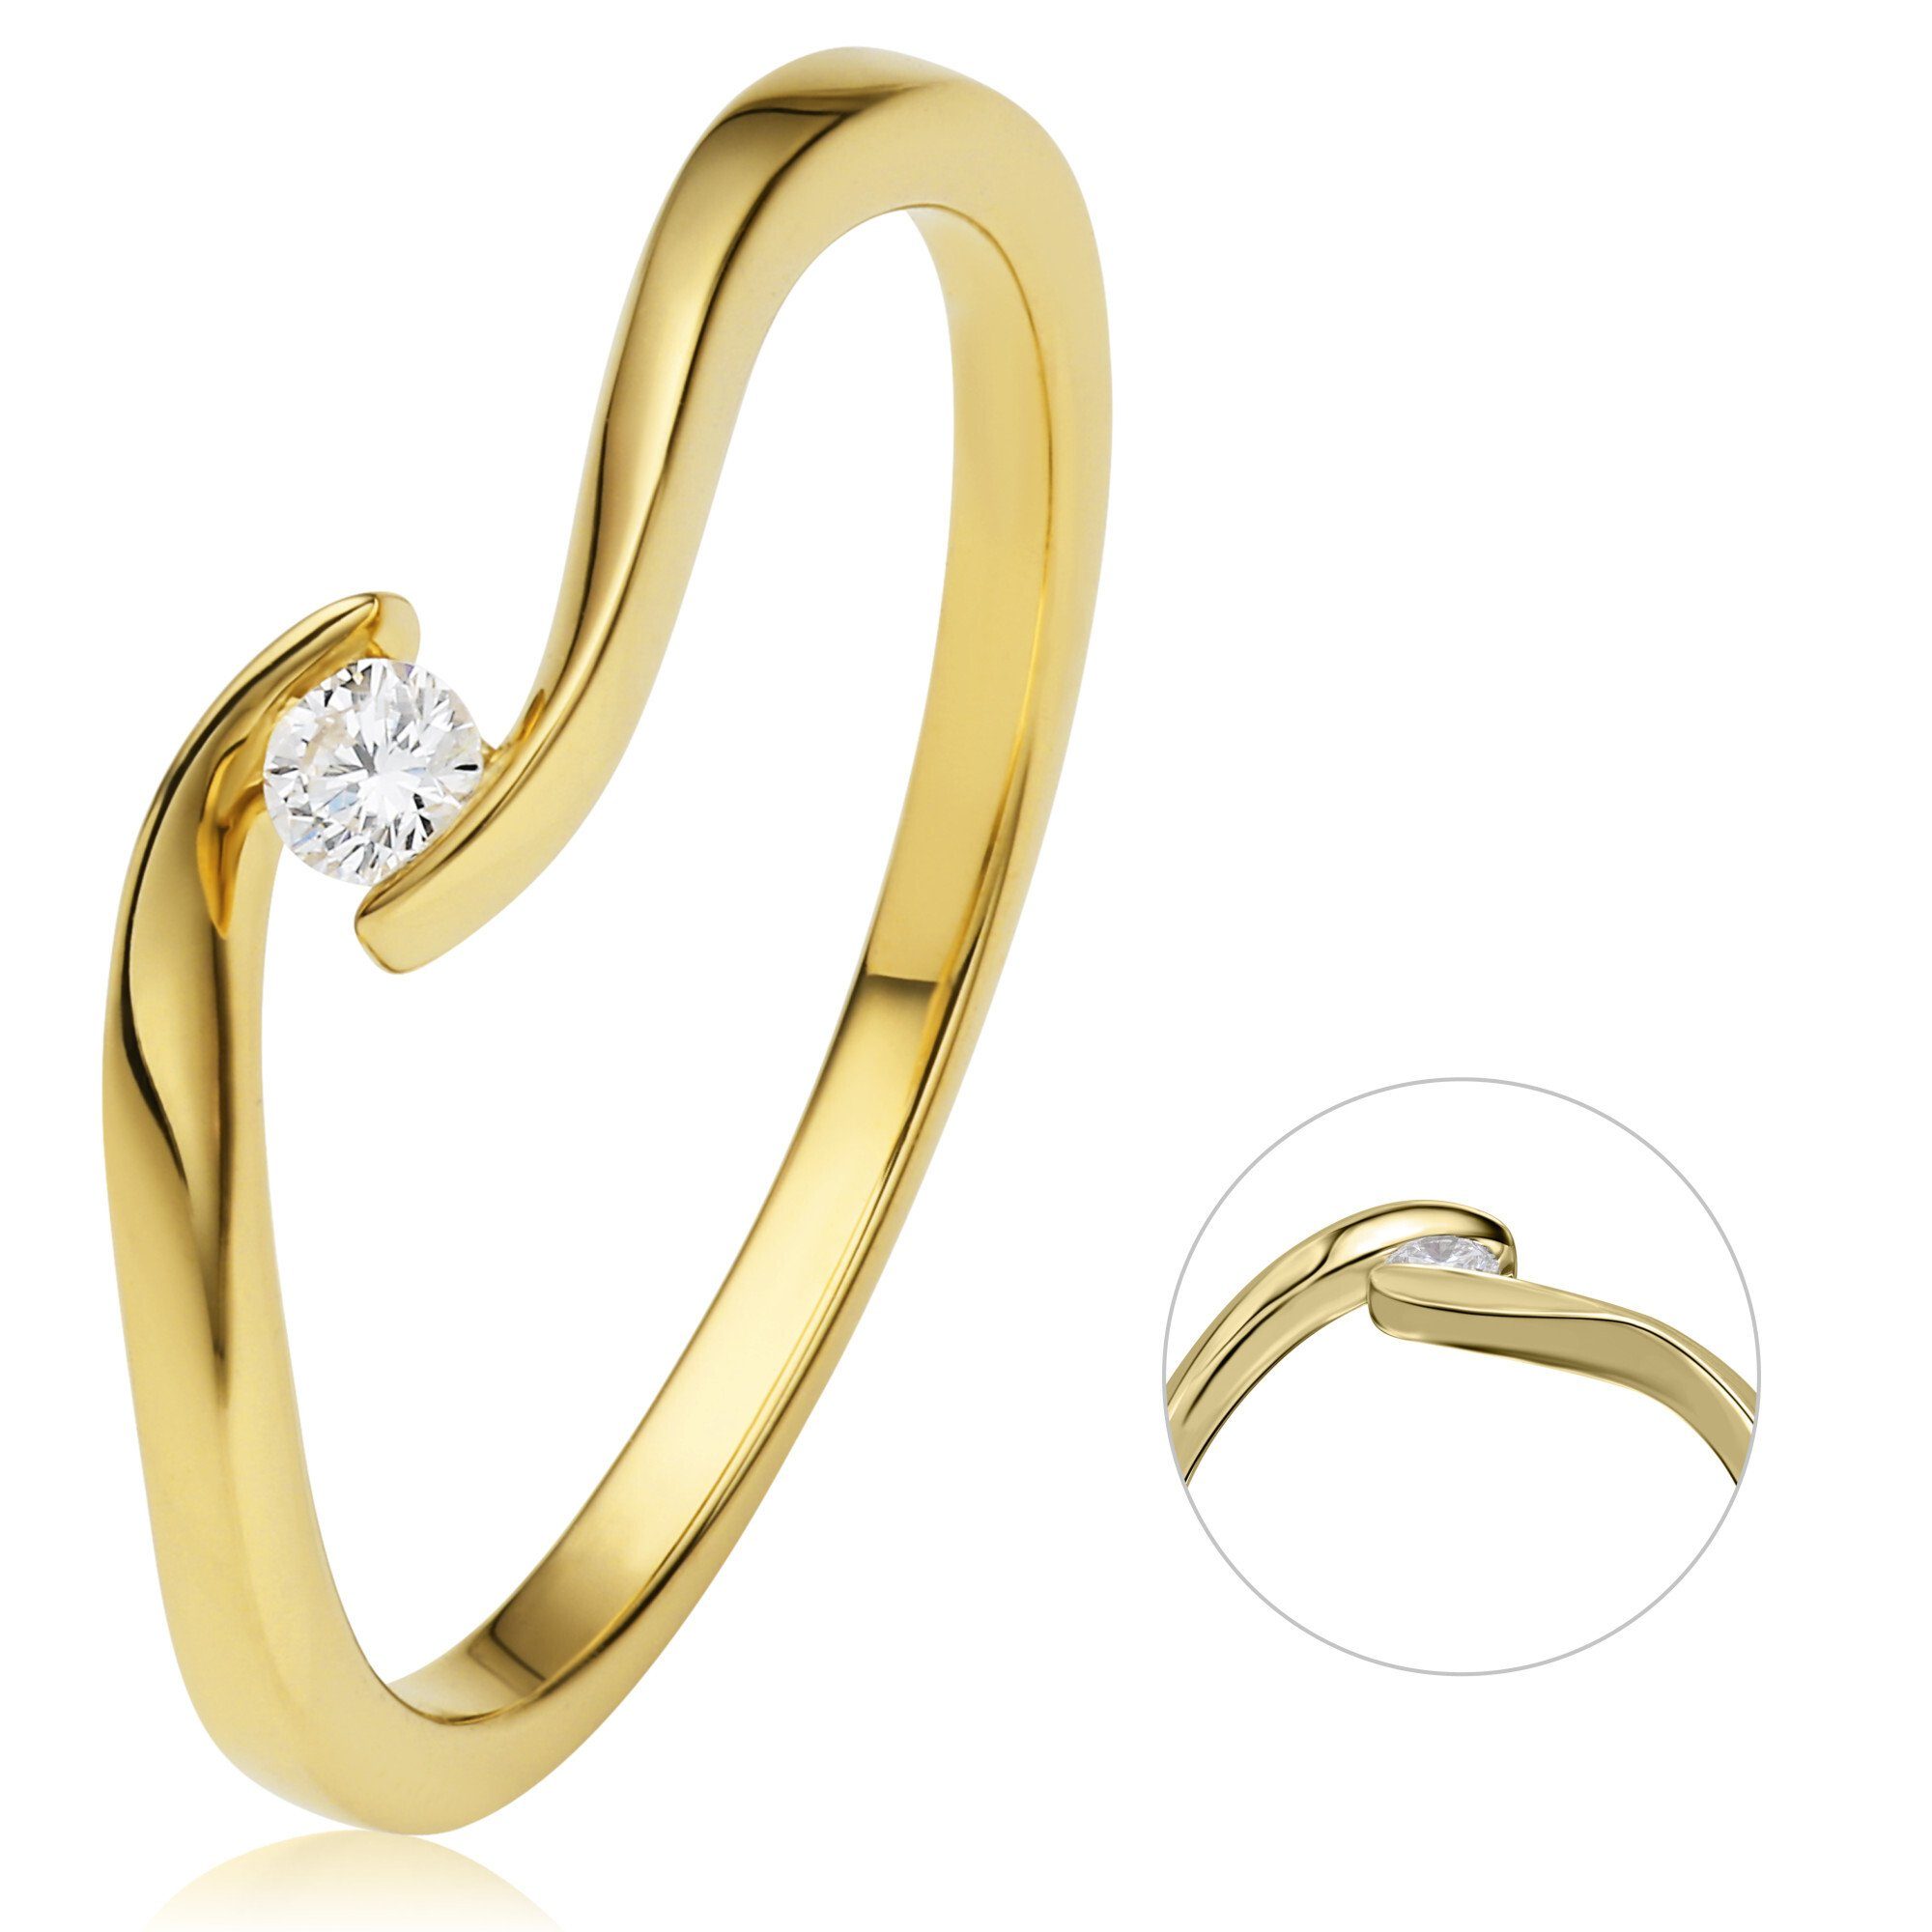 ONE ELEMENT Diamantring 0,05 ct Diamant Brillant Spannfassung Ring aus 750 Gelbgold, Damen Gold Schmuck Spannfassung